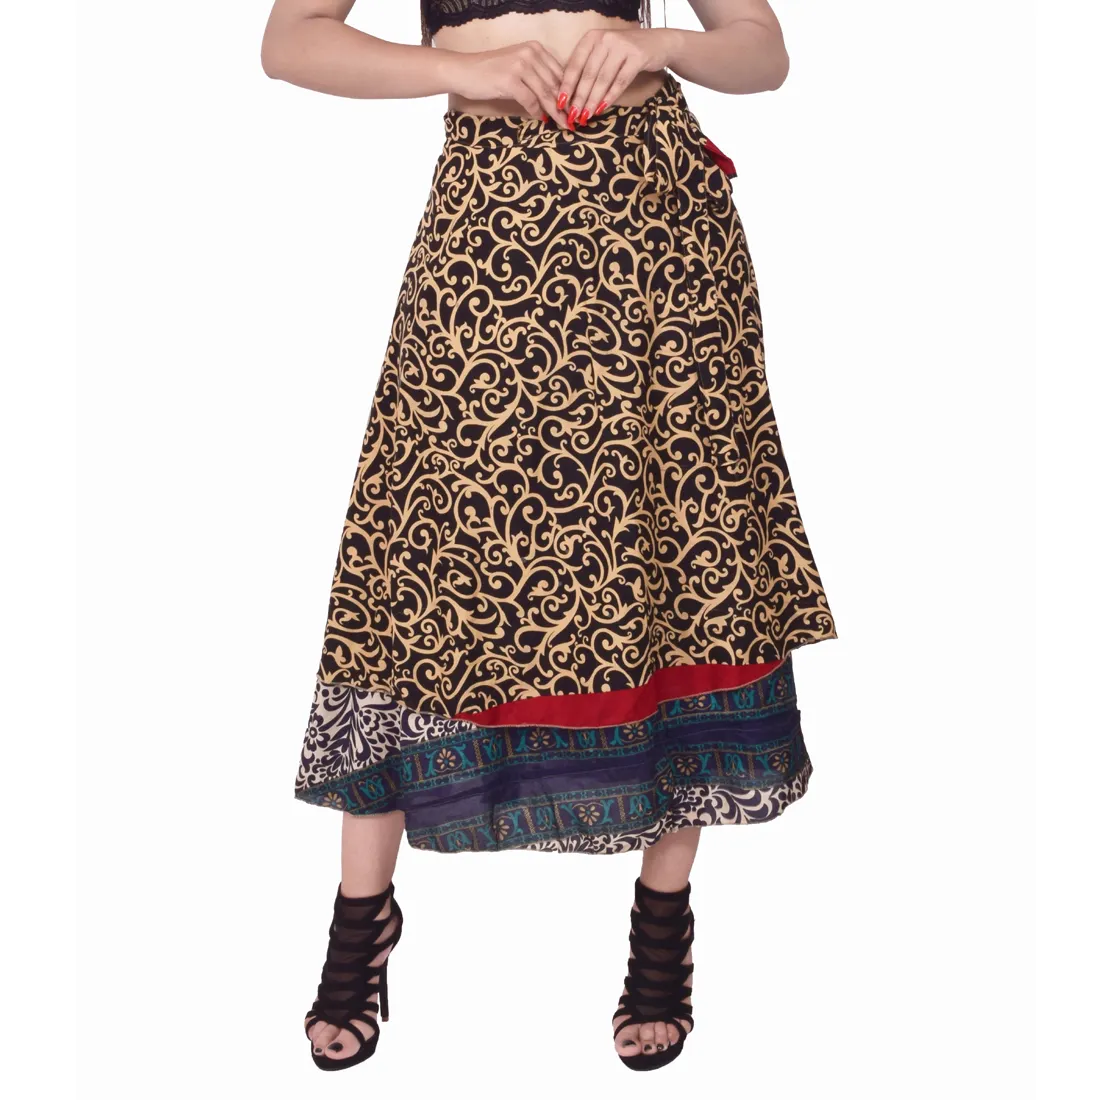 Wrapskirt रेशम साड़ी लंबी स्कर्ट समुद्र तट हिंदेशियन वस्र काले कपड़े में लपेटकर चारों ओर पोशाक स्कर्ट